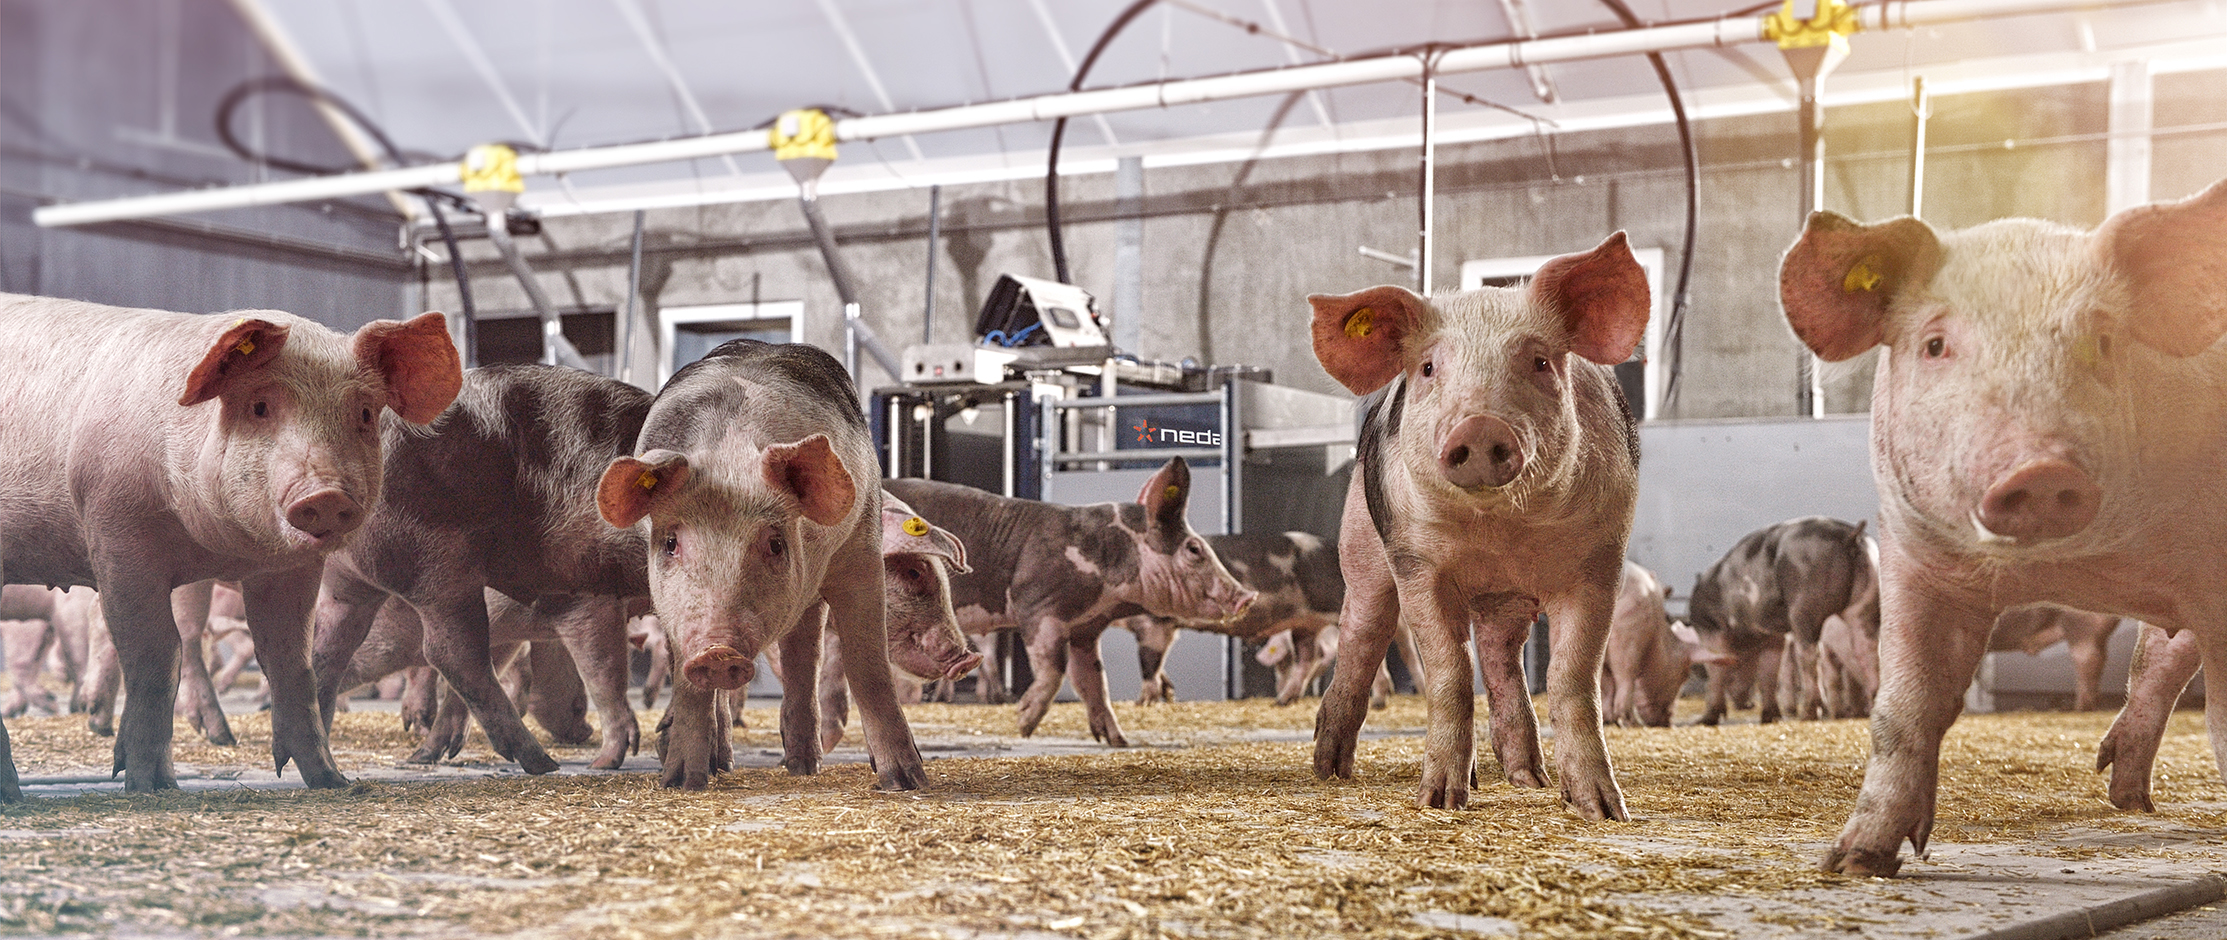 Eficiencia de las básculas de clasificación automatizada en granjas porcinas